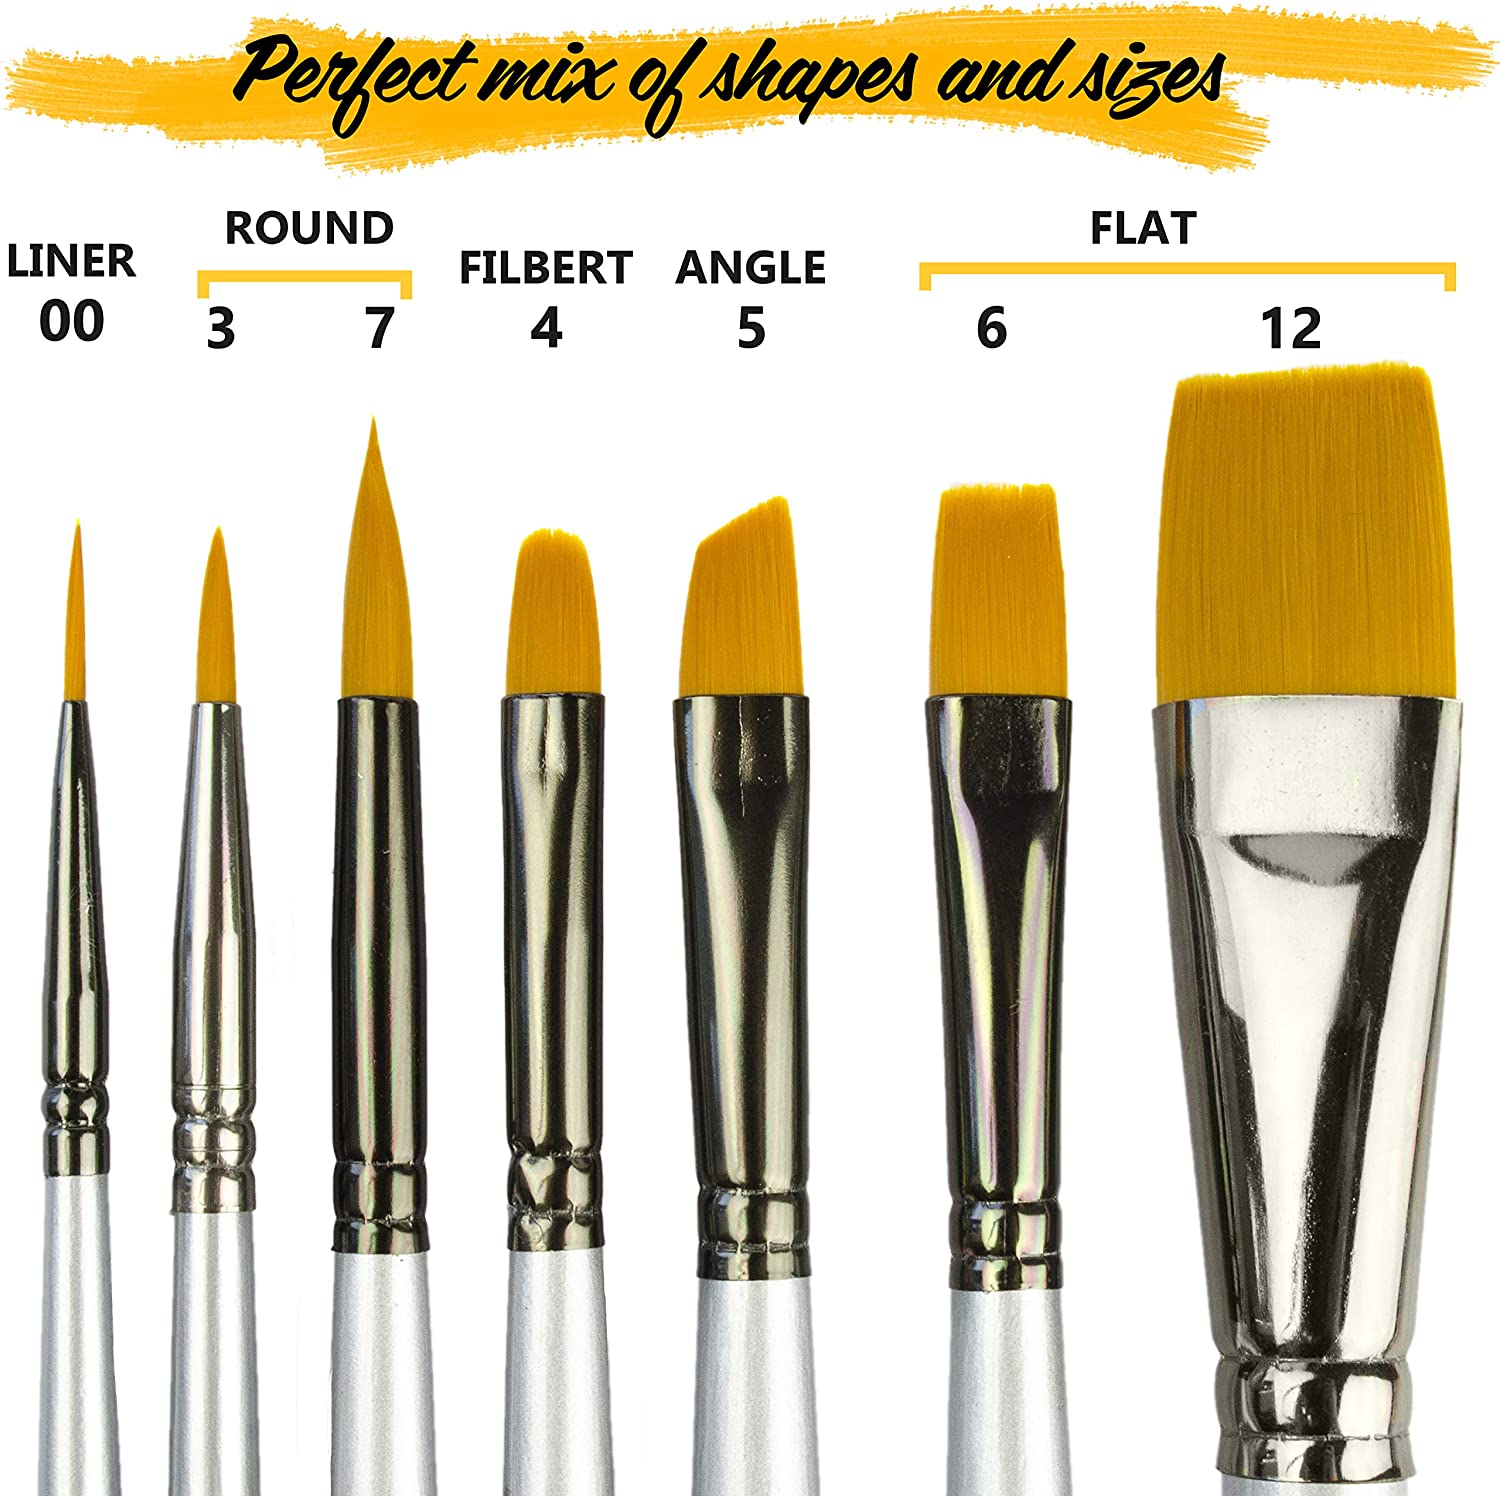 Miniature Paint Brushes Set 6pcs 1 Free Best Find Detail Paint